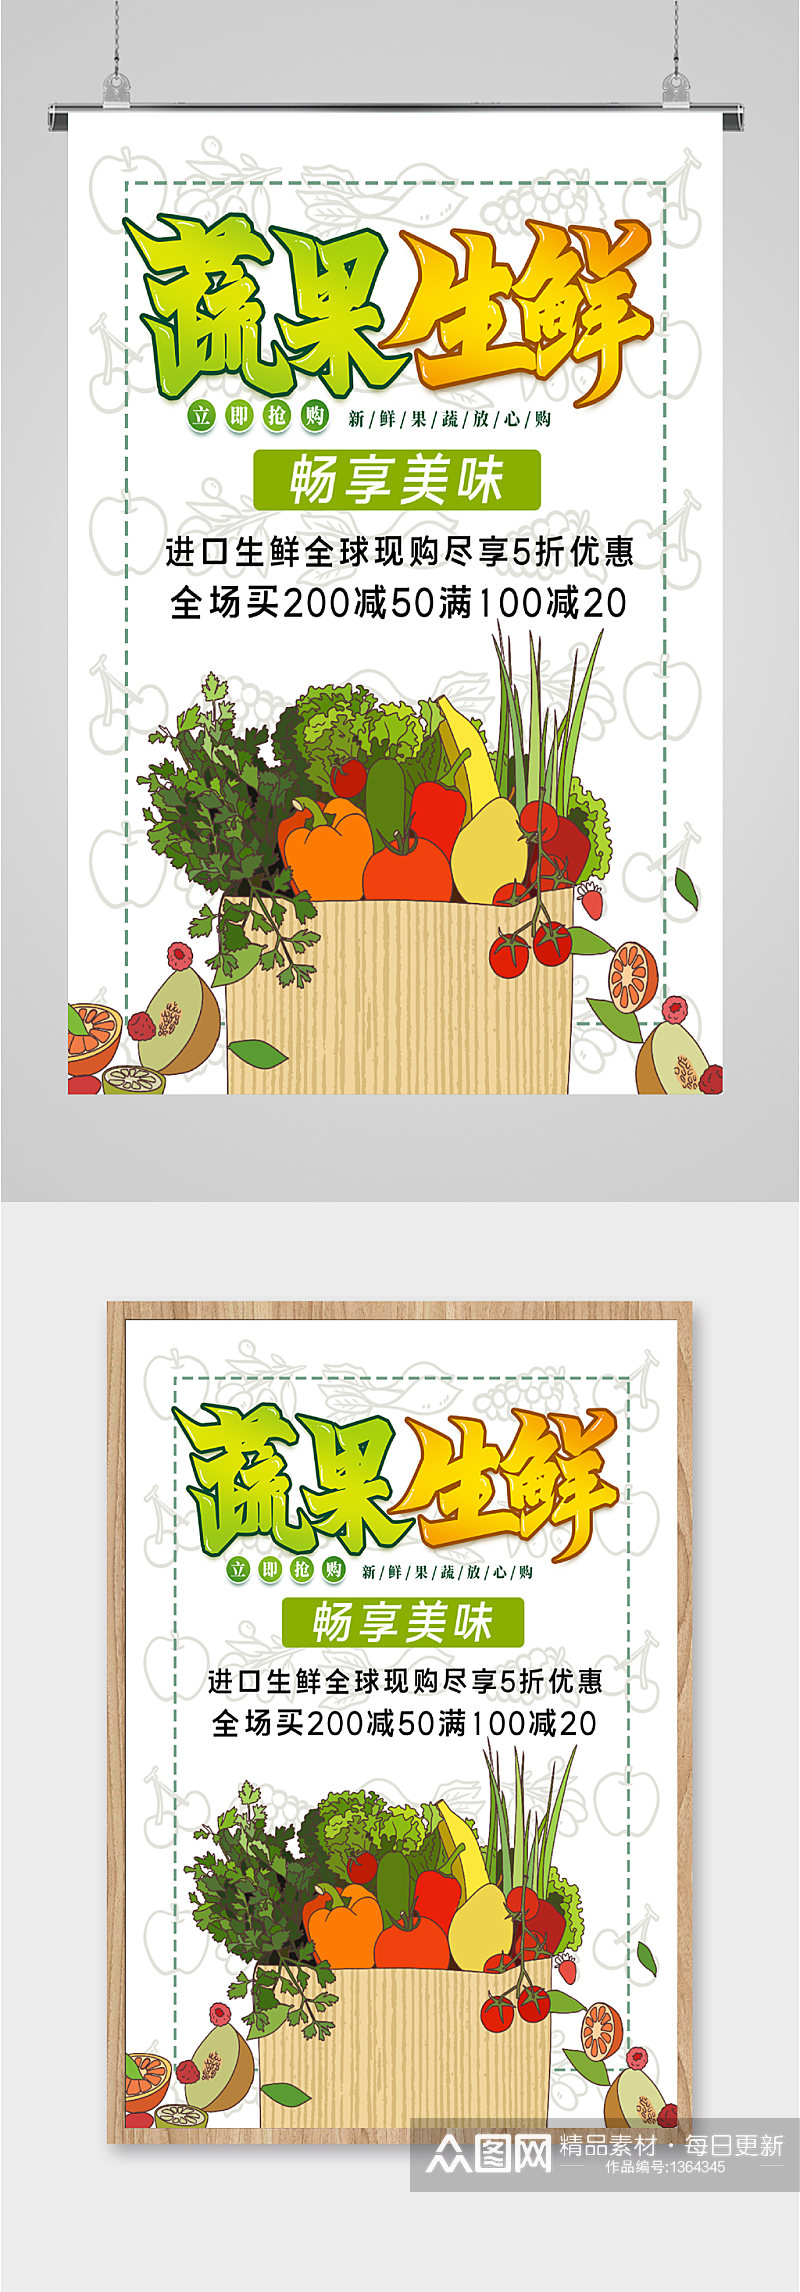 蔬果生鲜宣传海报素材